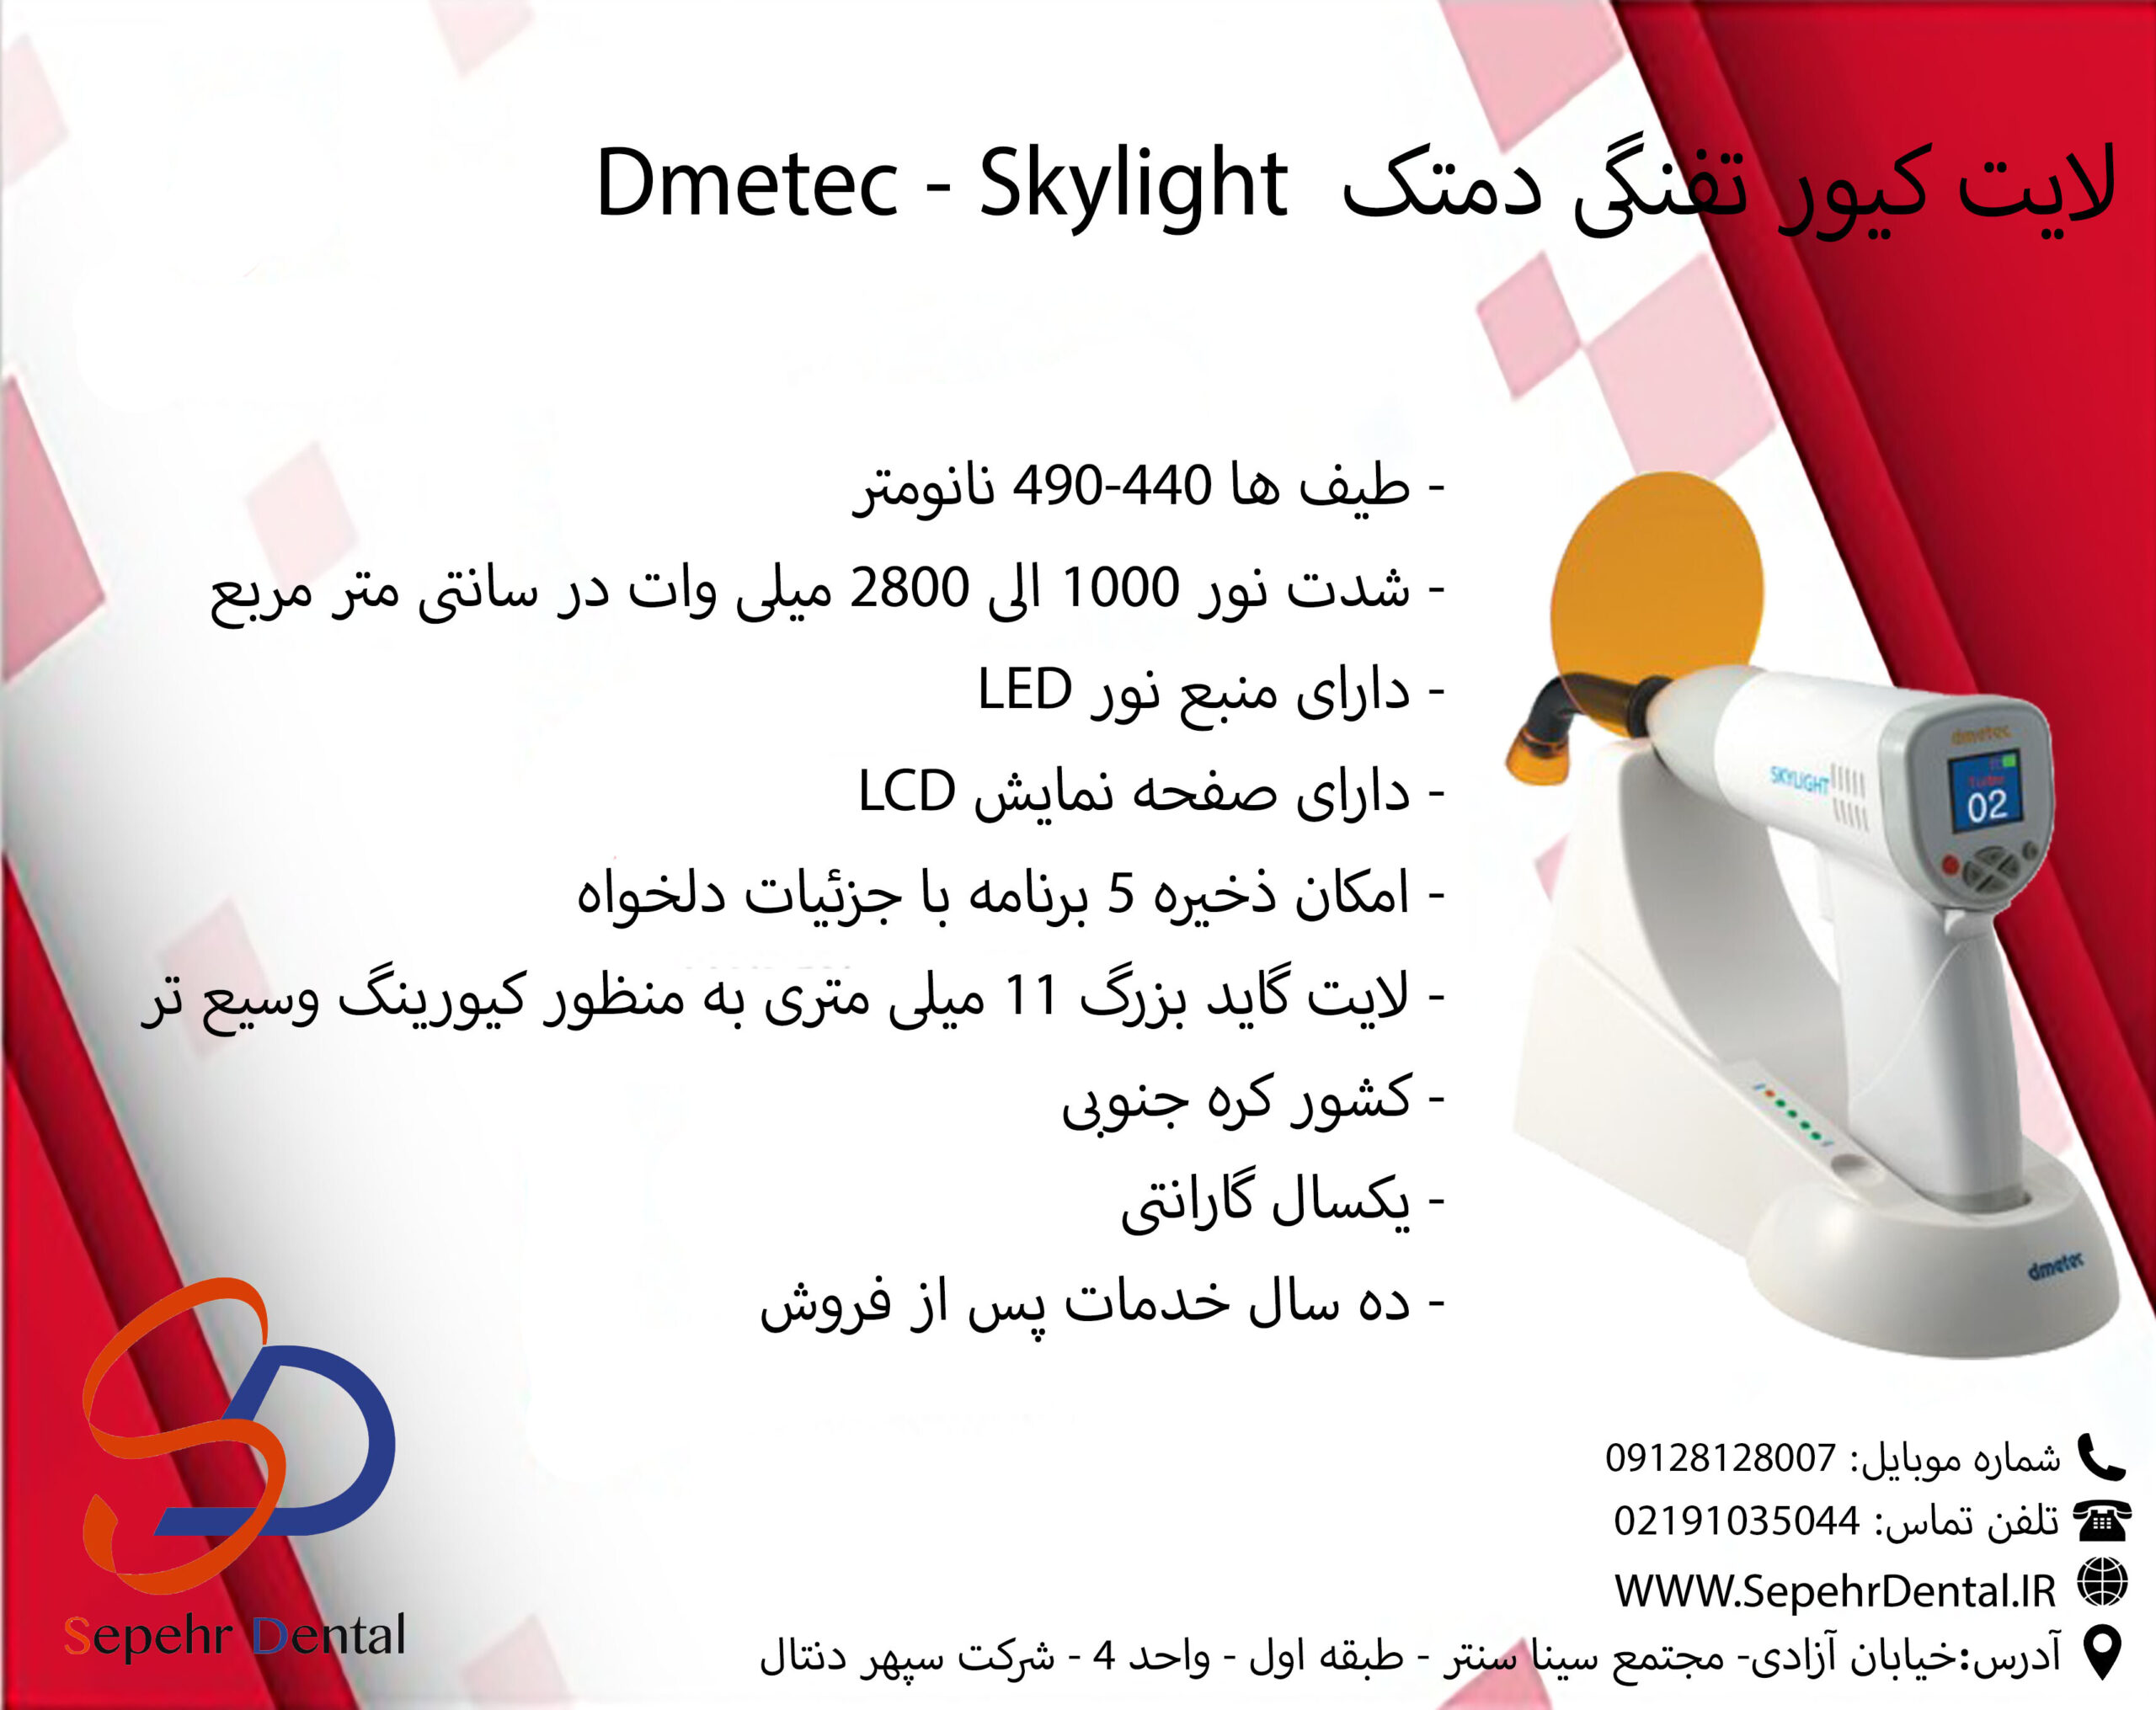 لایت کیور دمتک Dmetec مدل Skylight